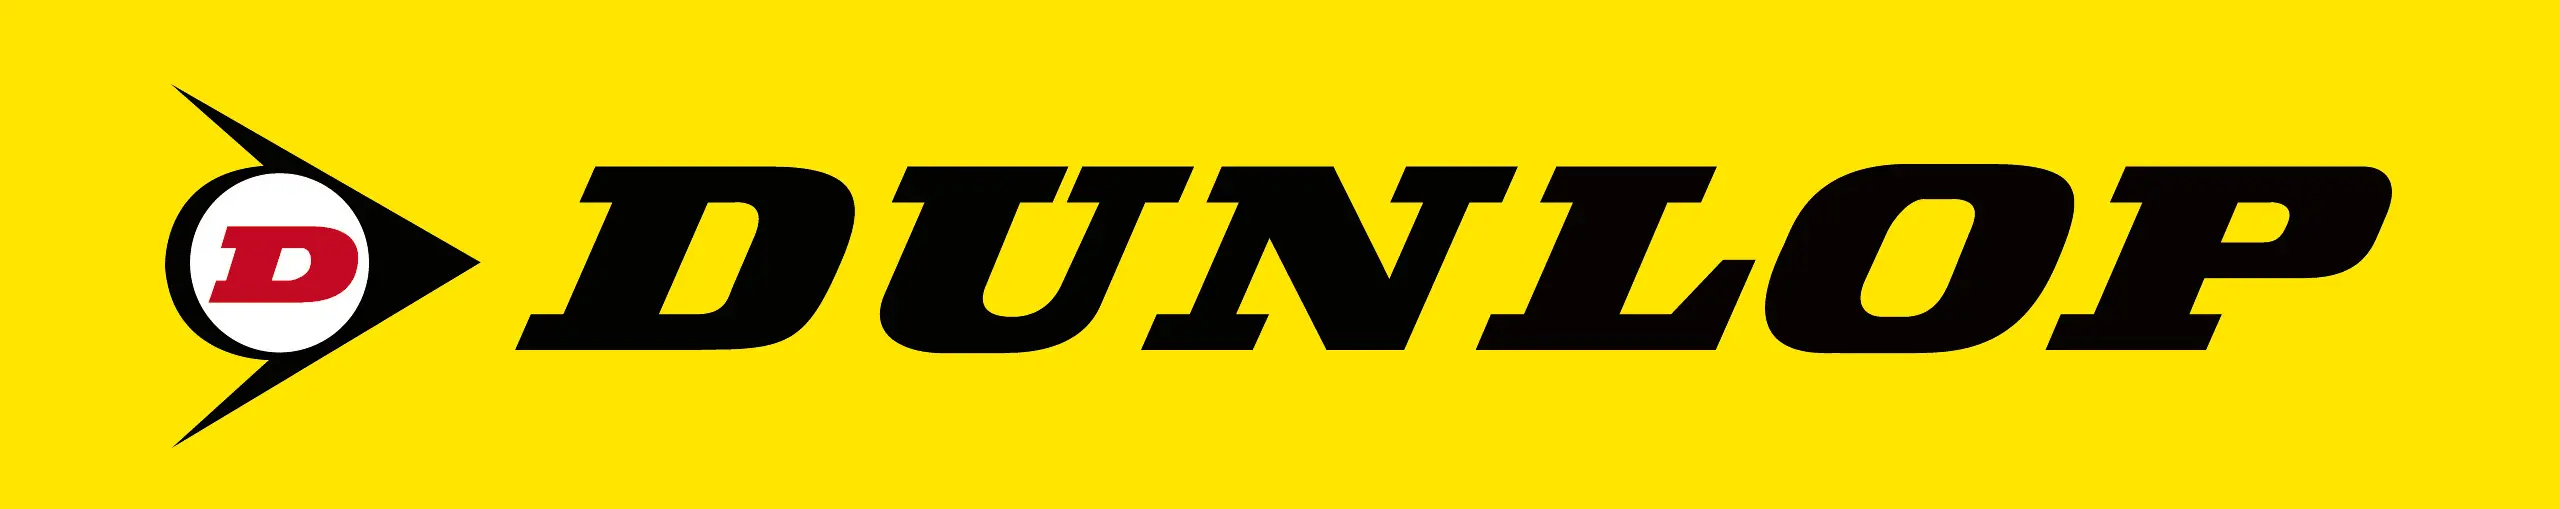 Dunlop teher gumiabroncs logo